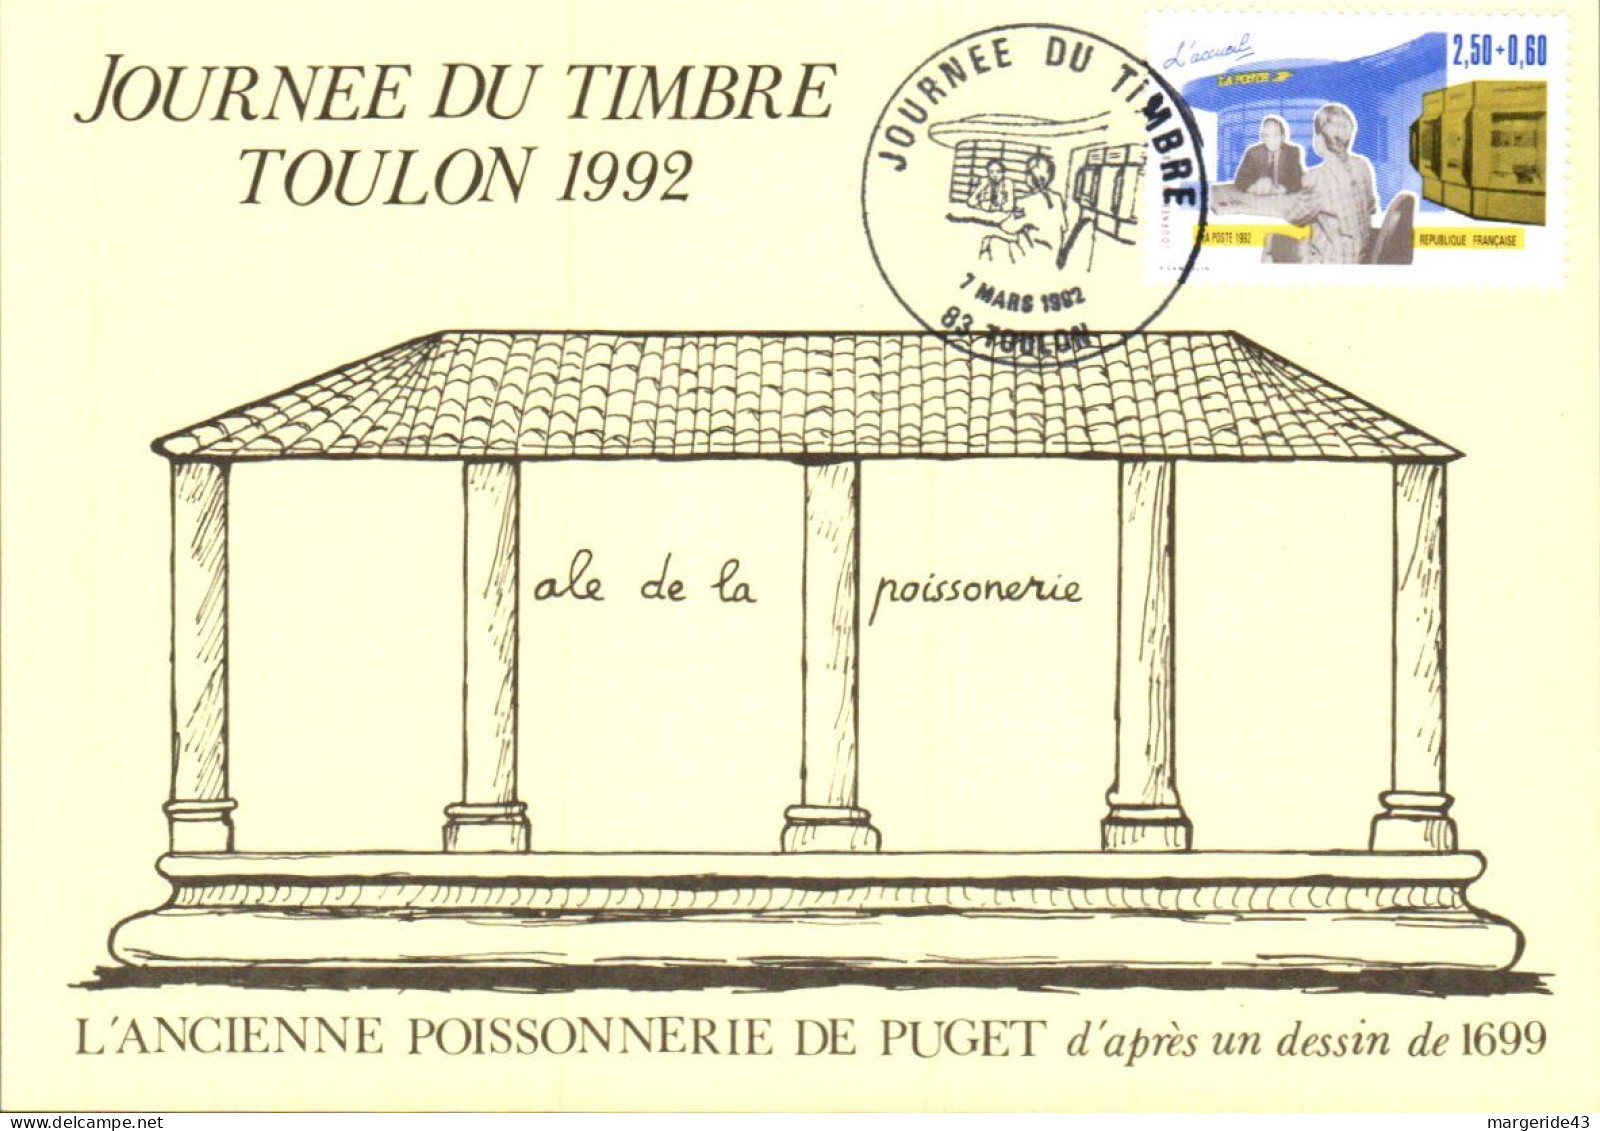 JOURNEE DU TIMBRE 1992 TOULON - Commemorative Postmarks